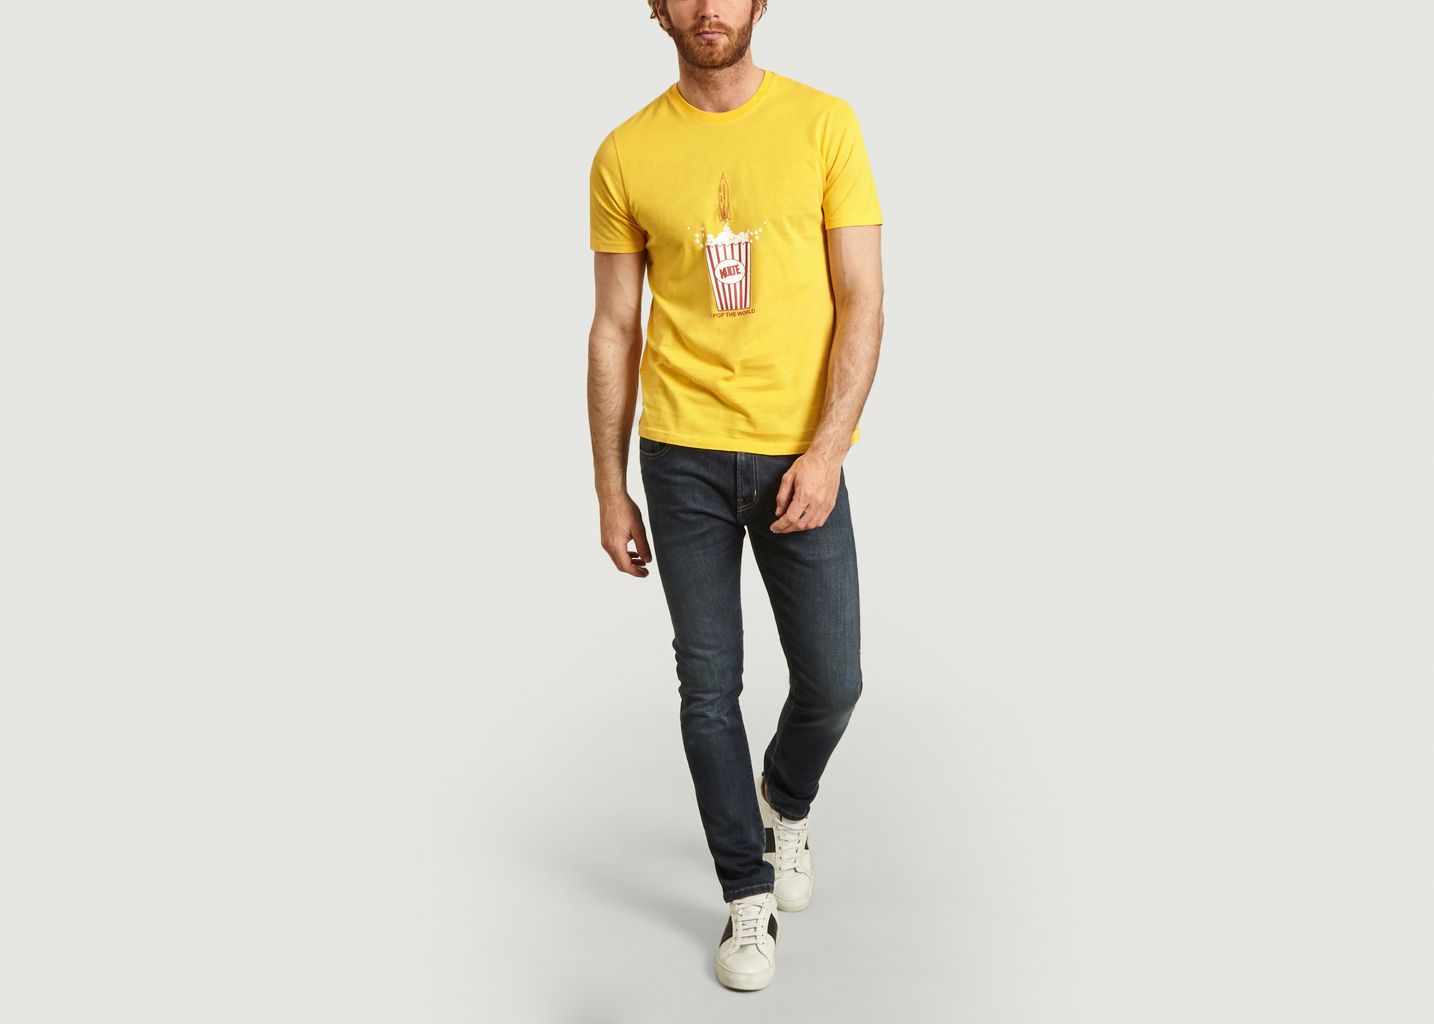 T-shirt Pop Corn - Kulte